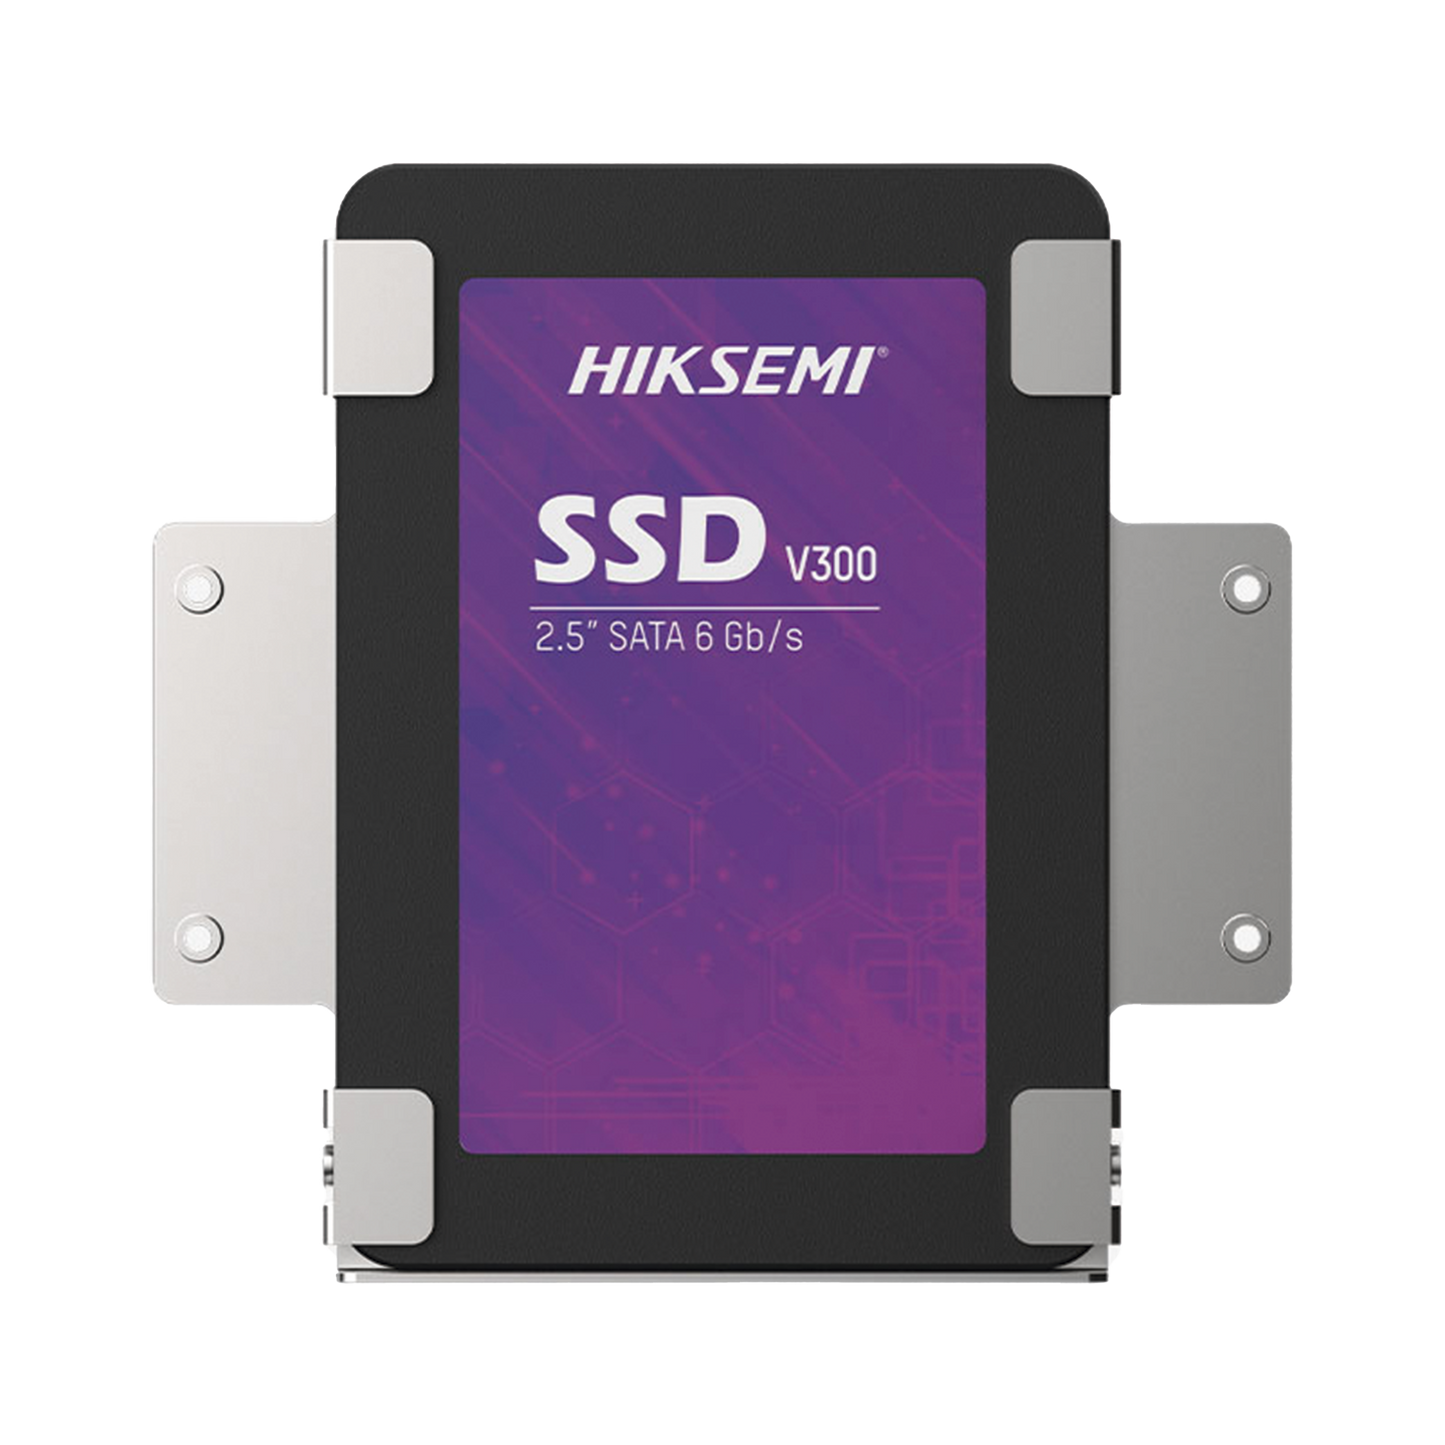 SSD PARA VIDEOVIGILANCIA / Unidad de Estado Solido / 1 TB / 2.5" / Alto Performance / Uso 24/7 / Compatible con DVR´s y NVR´s epcom / HiLook y HIKVISION (Seleccionados) / Incluye Base